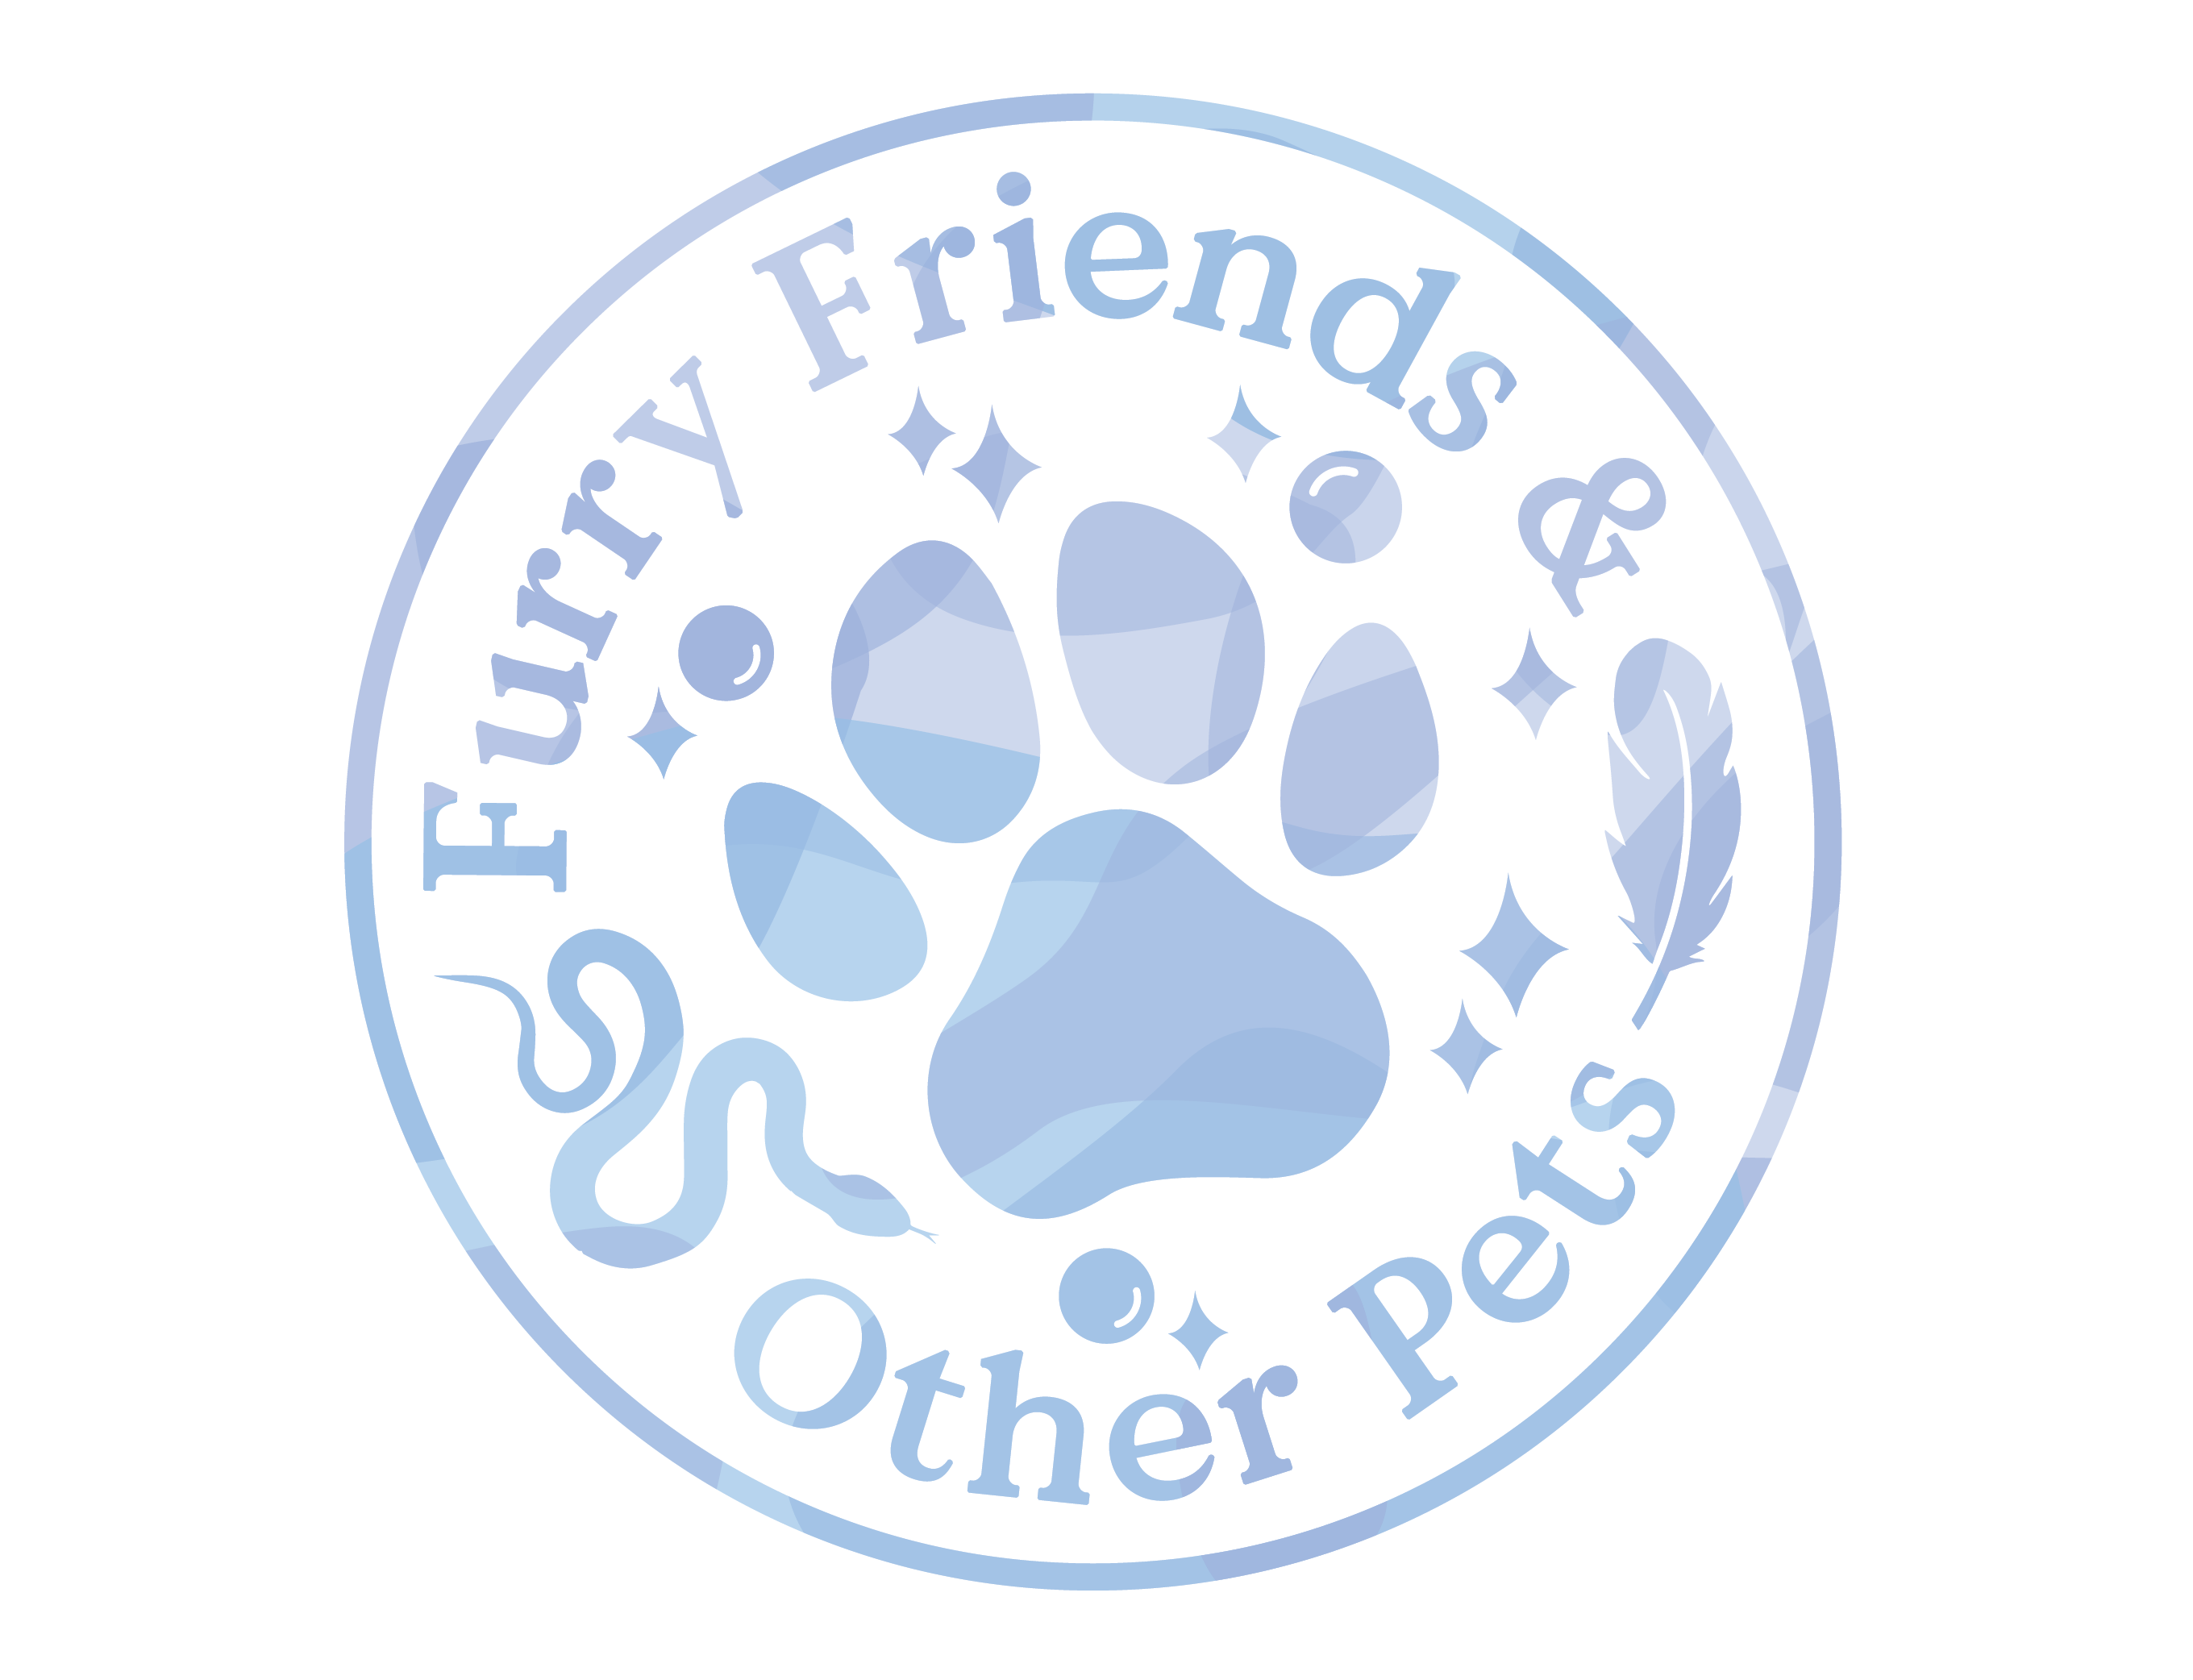 Furry Fellow - Pet Supplies